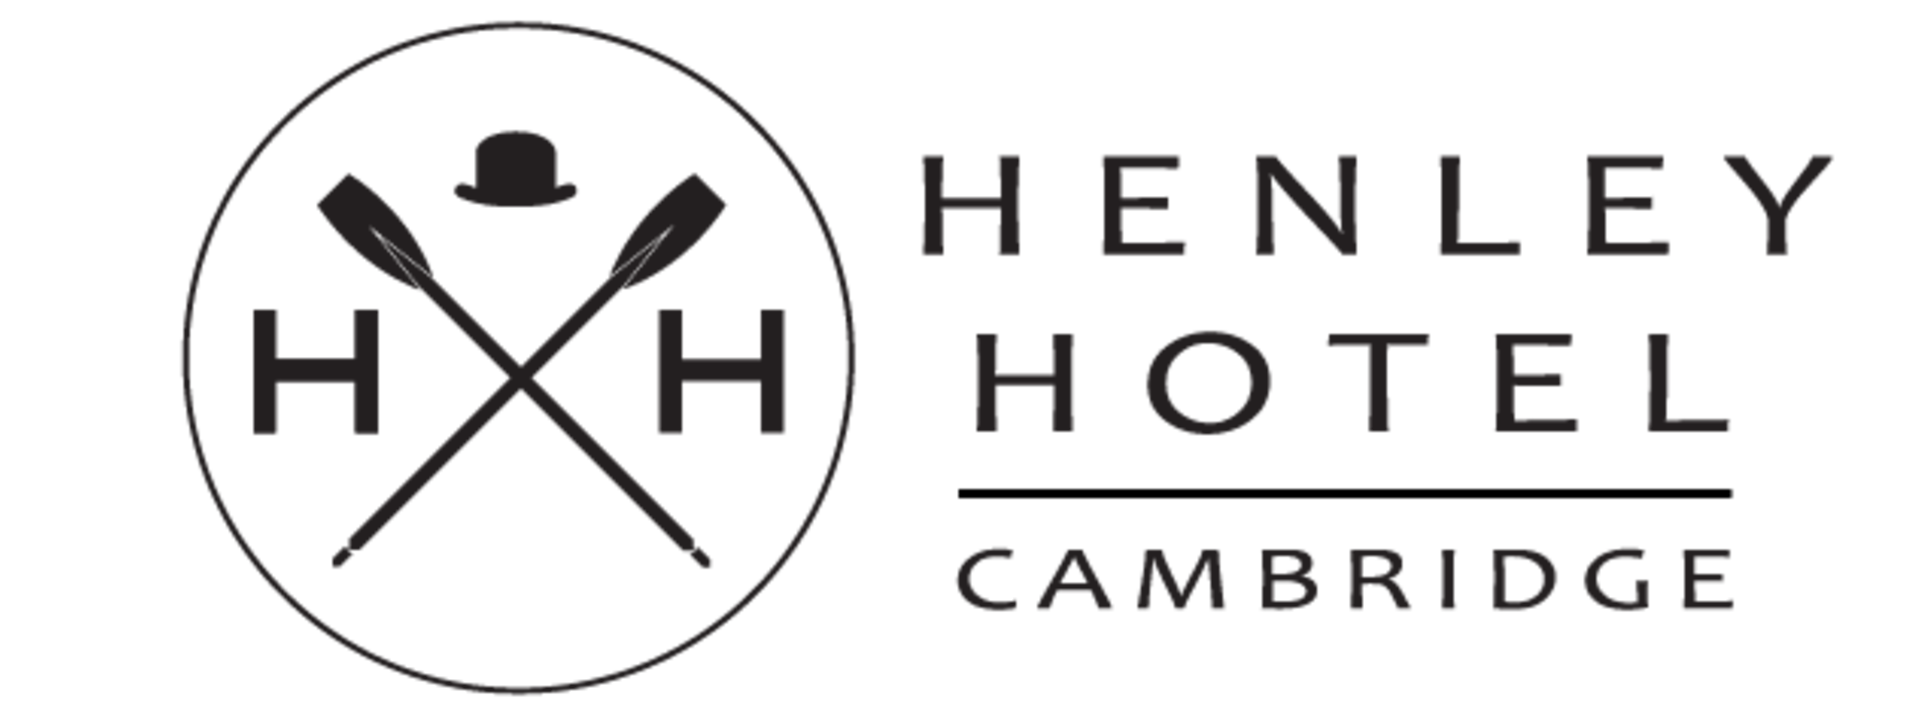 henley-logo-black-no-background.png